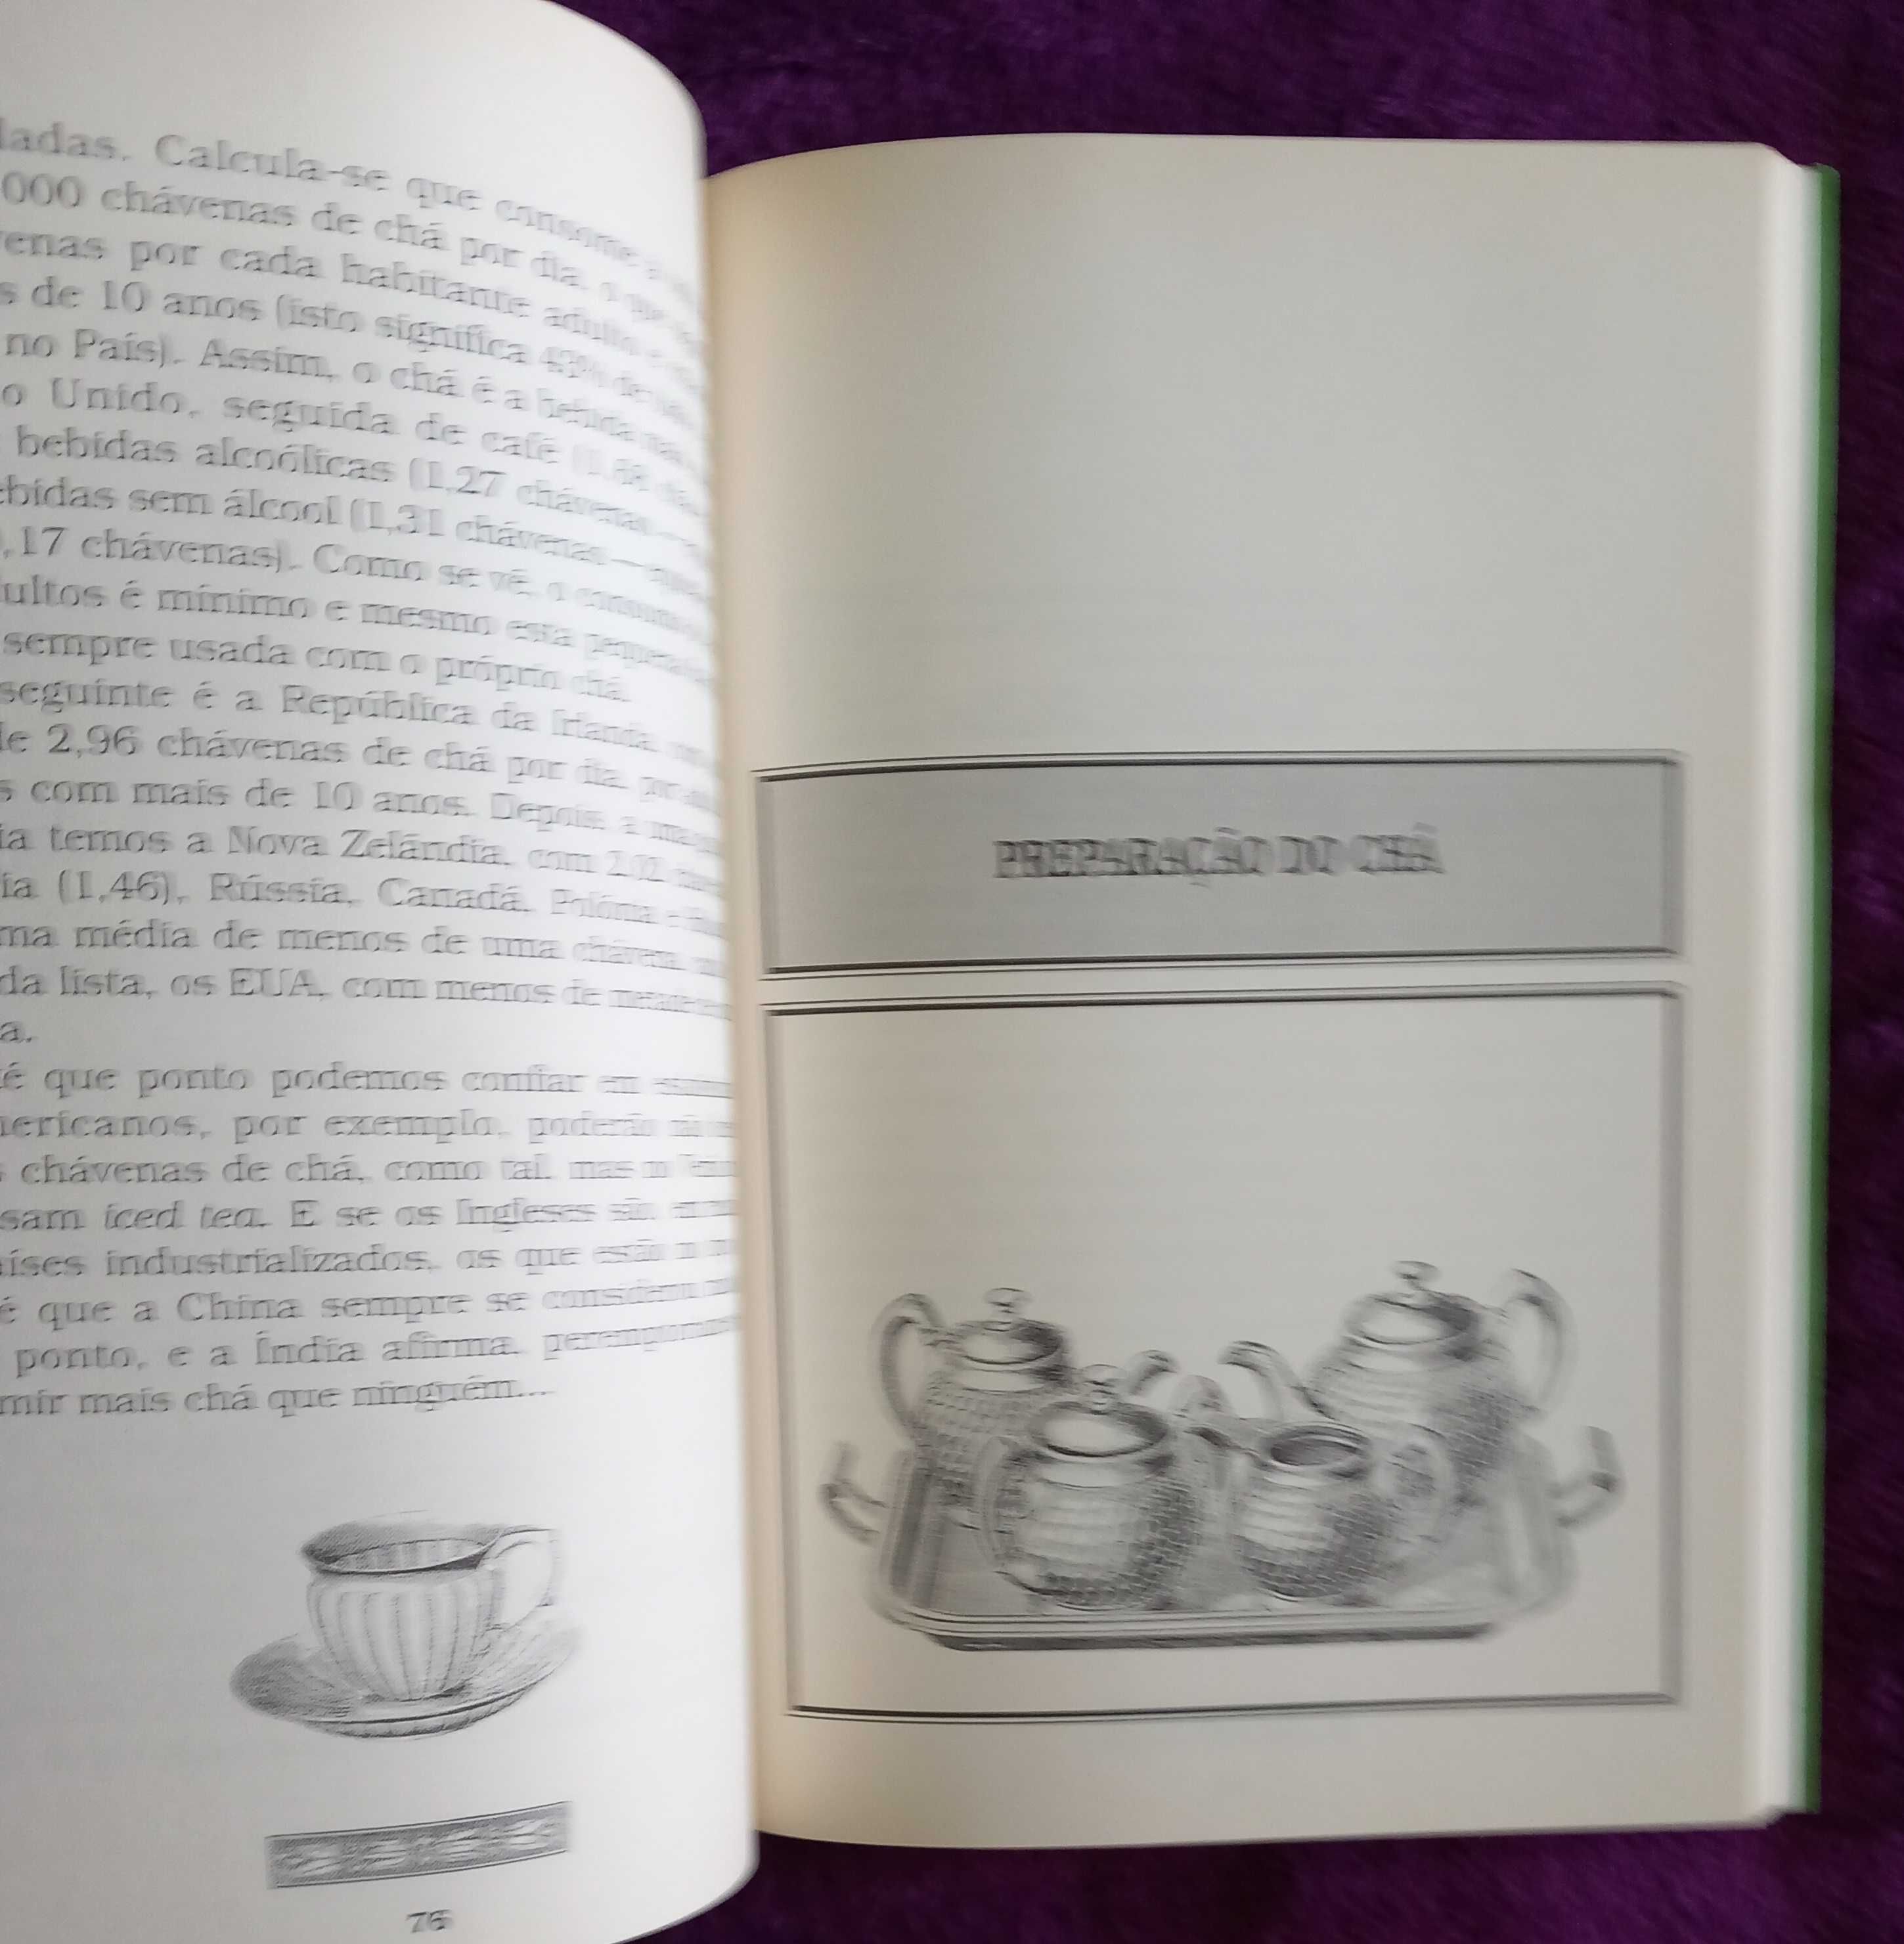 Edite Vieira Philips- O Livro do Chá [Colares Editora]